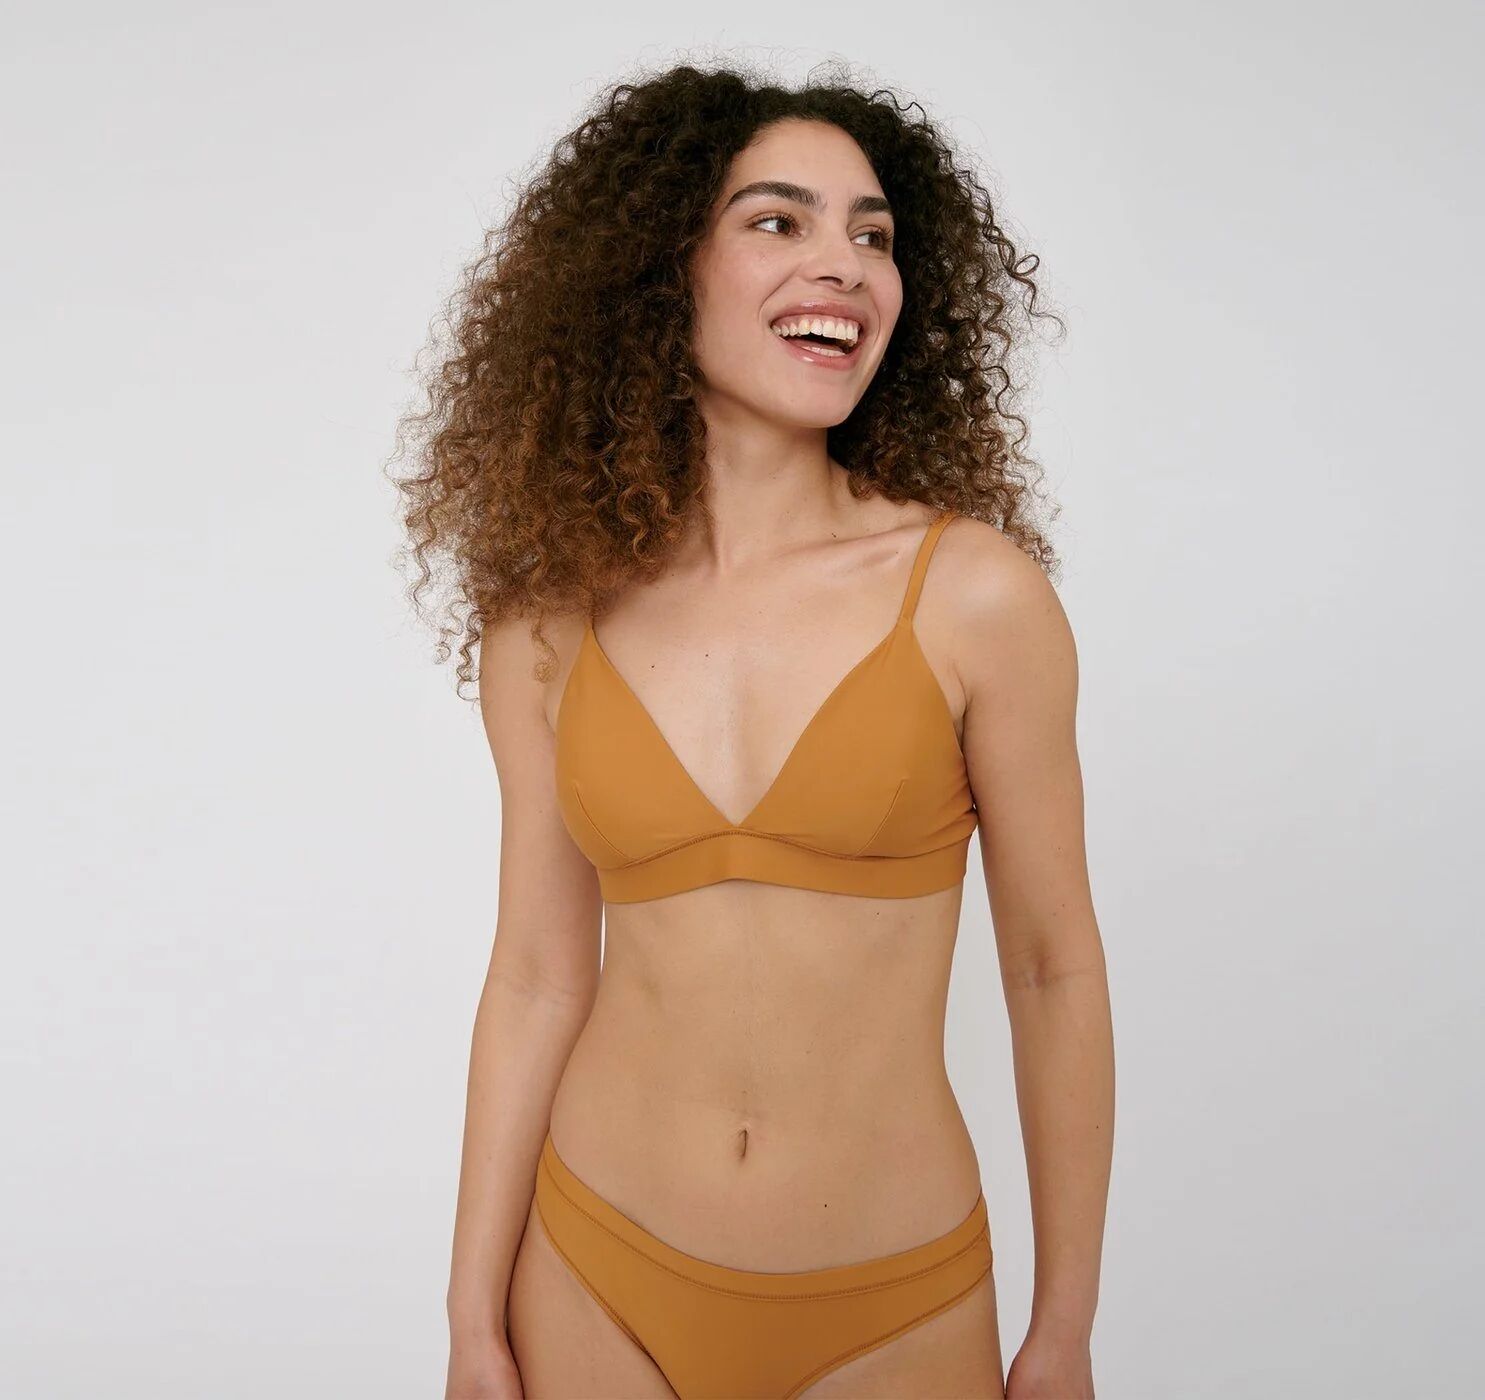 Organic Basics Women's Re-Swim Bikini Top - Recycled Nylon, Ocher / M